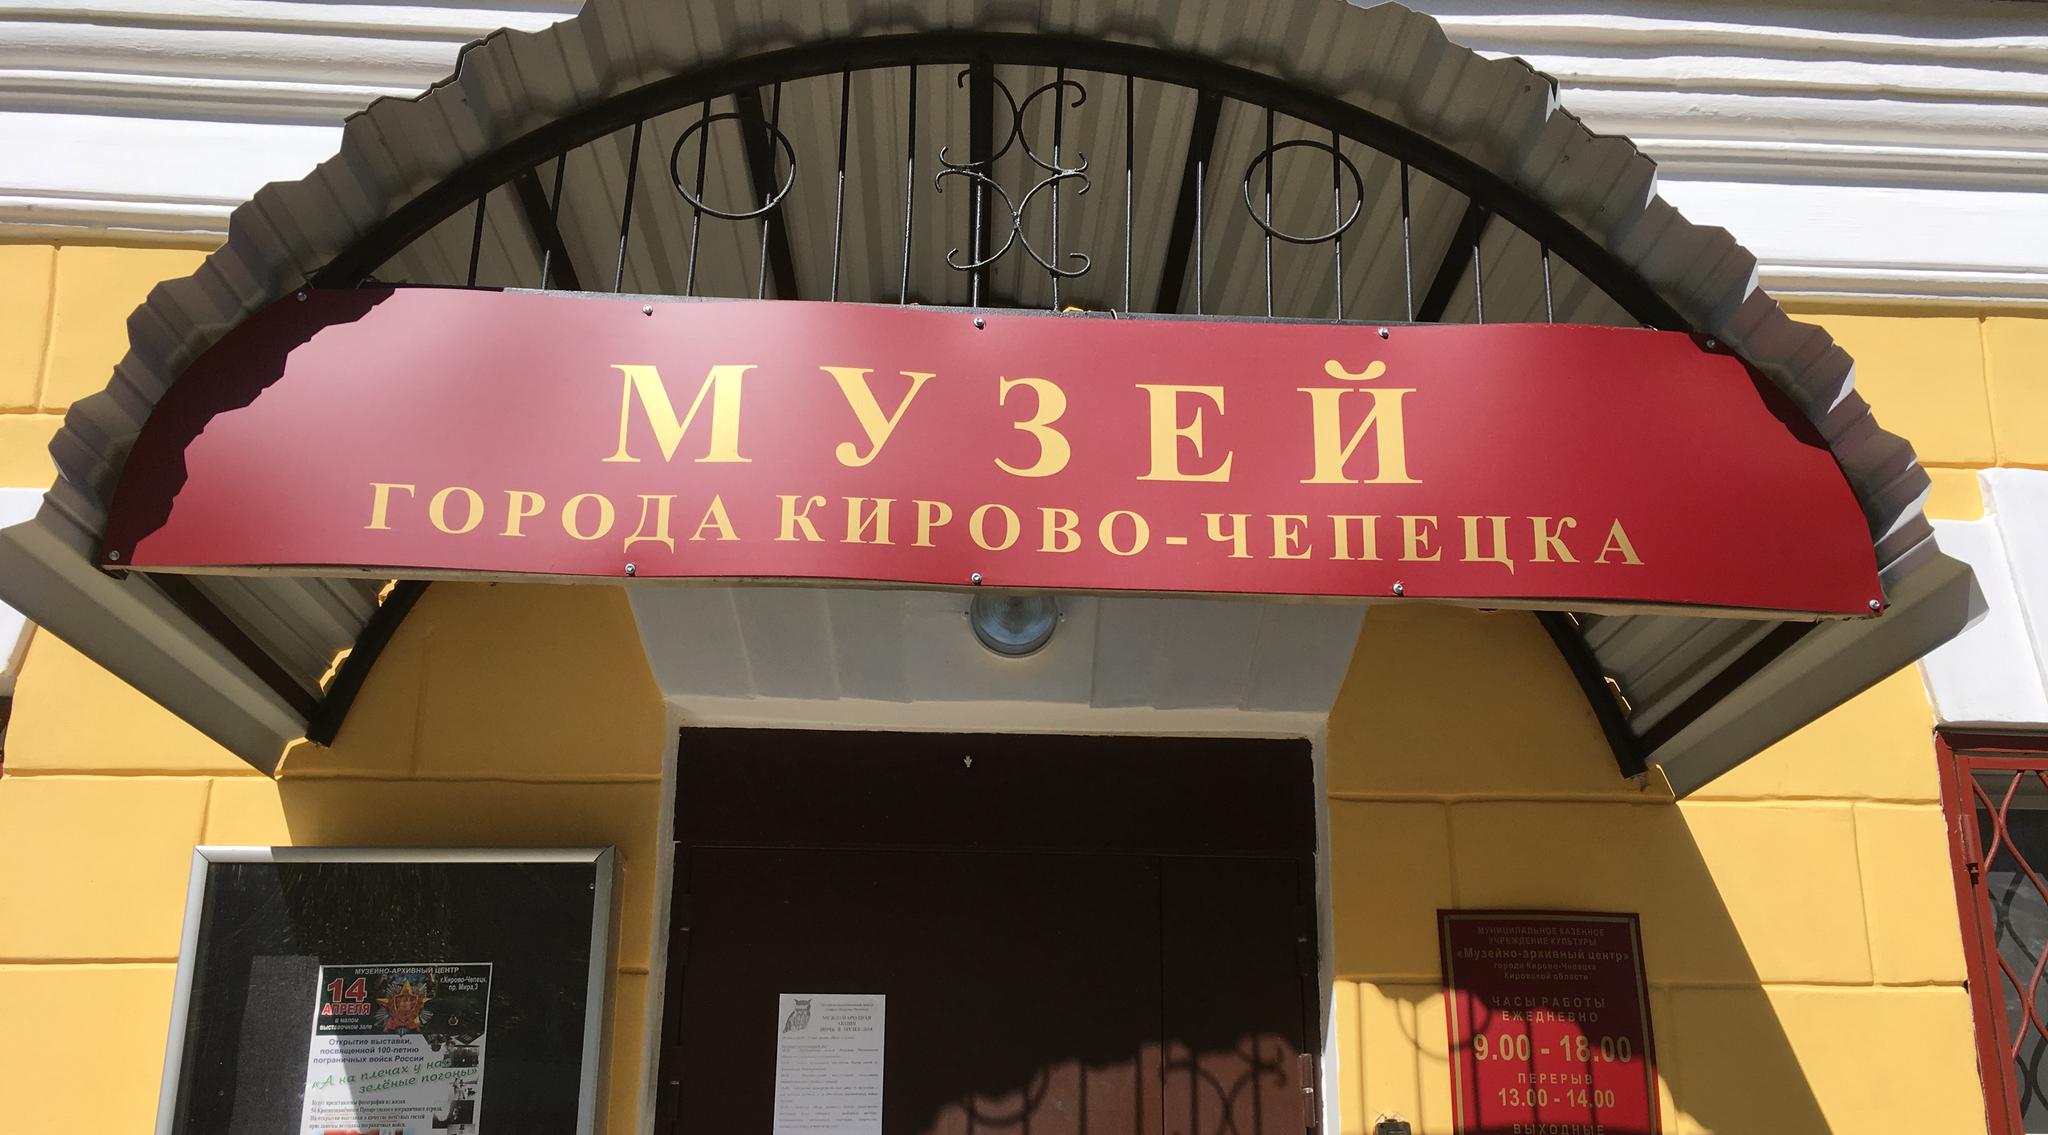 Музей в Кирово-Чепецке выиграл грант на 700 тысяч рублей